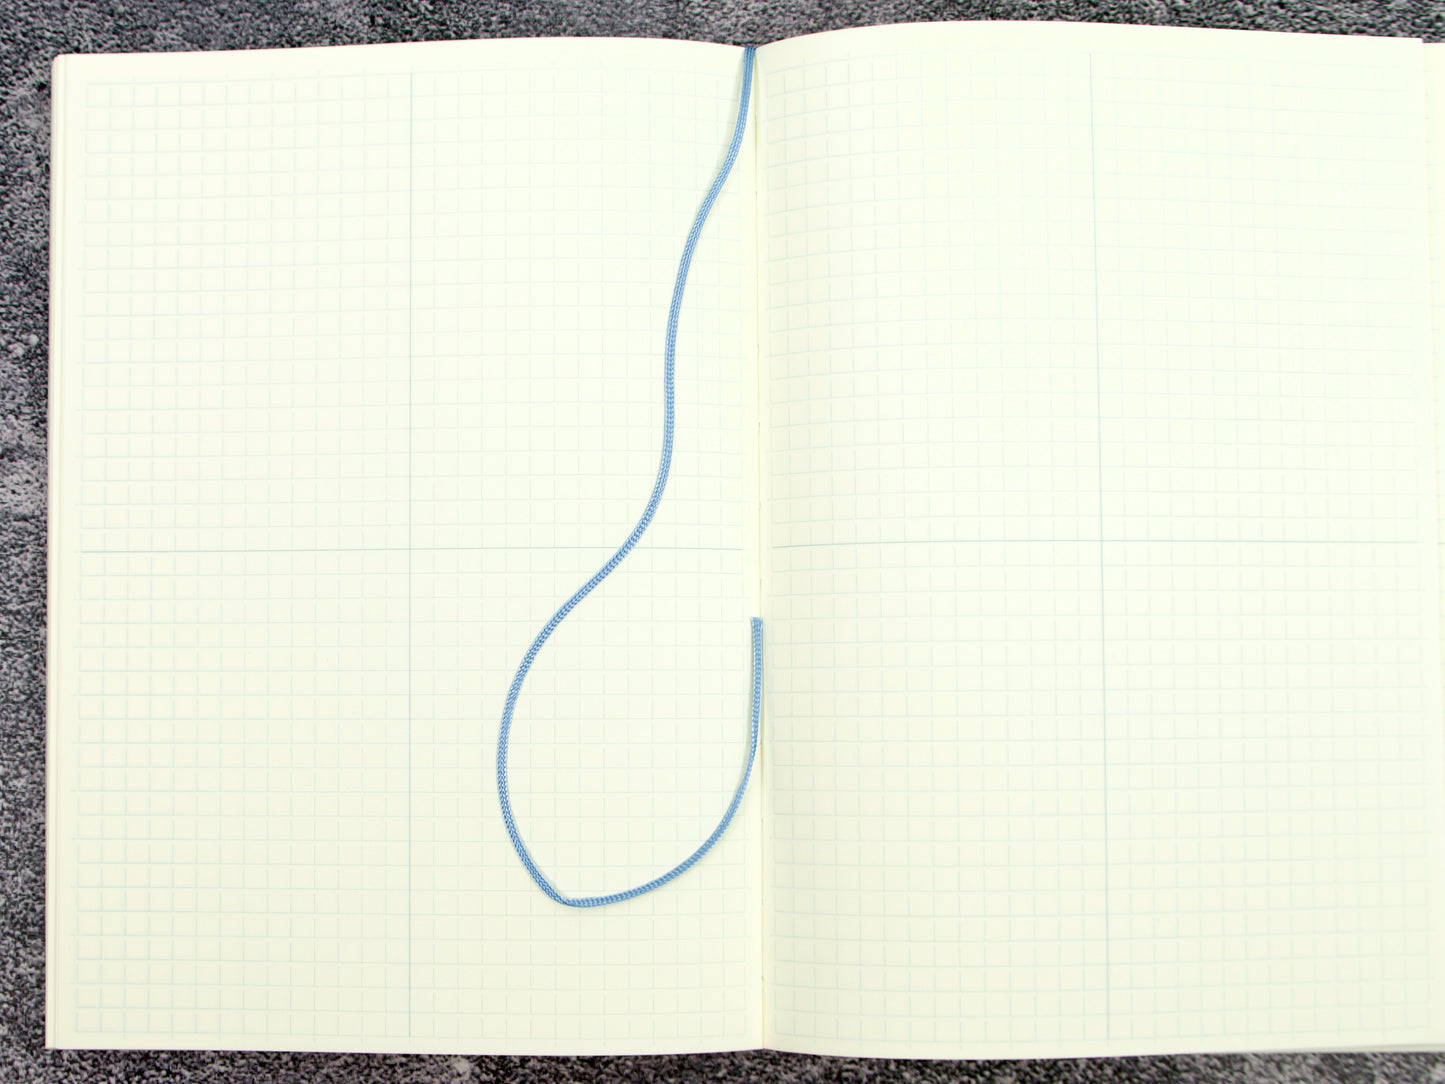 Midori MD Paper Notebook Journal A5